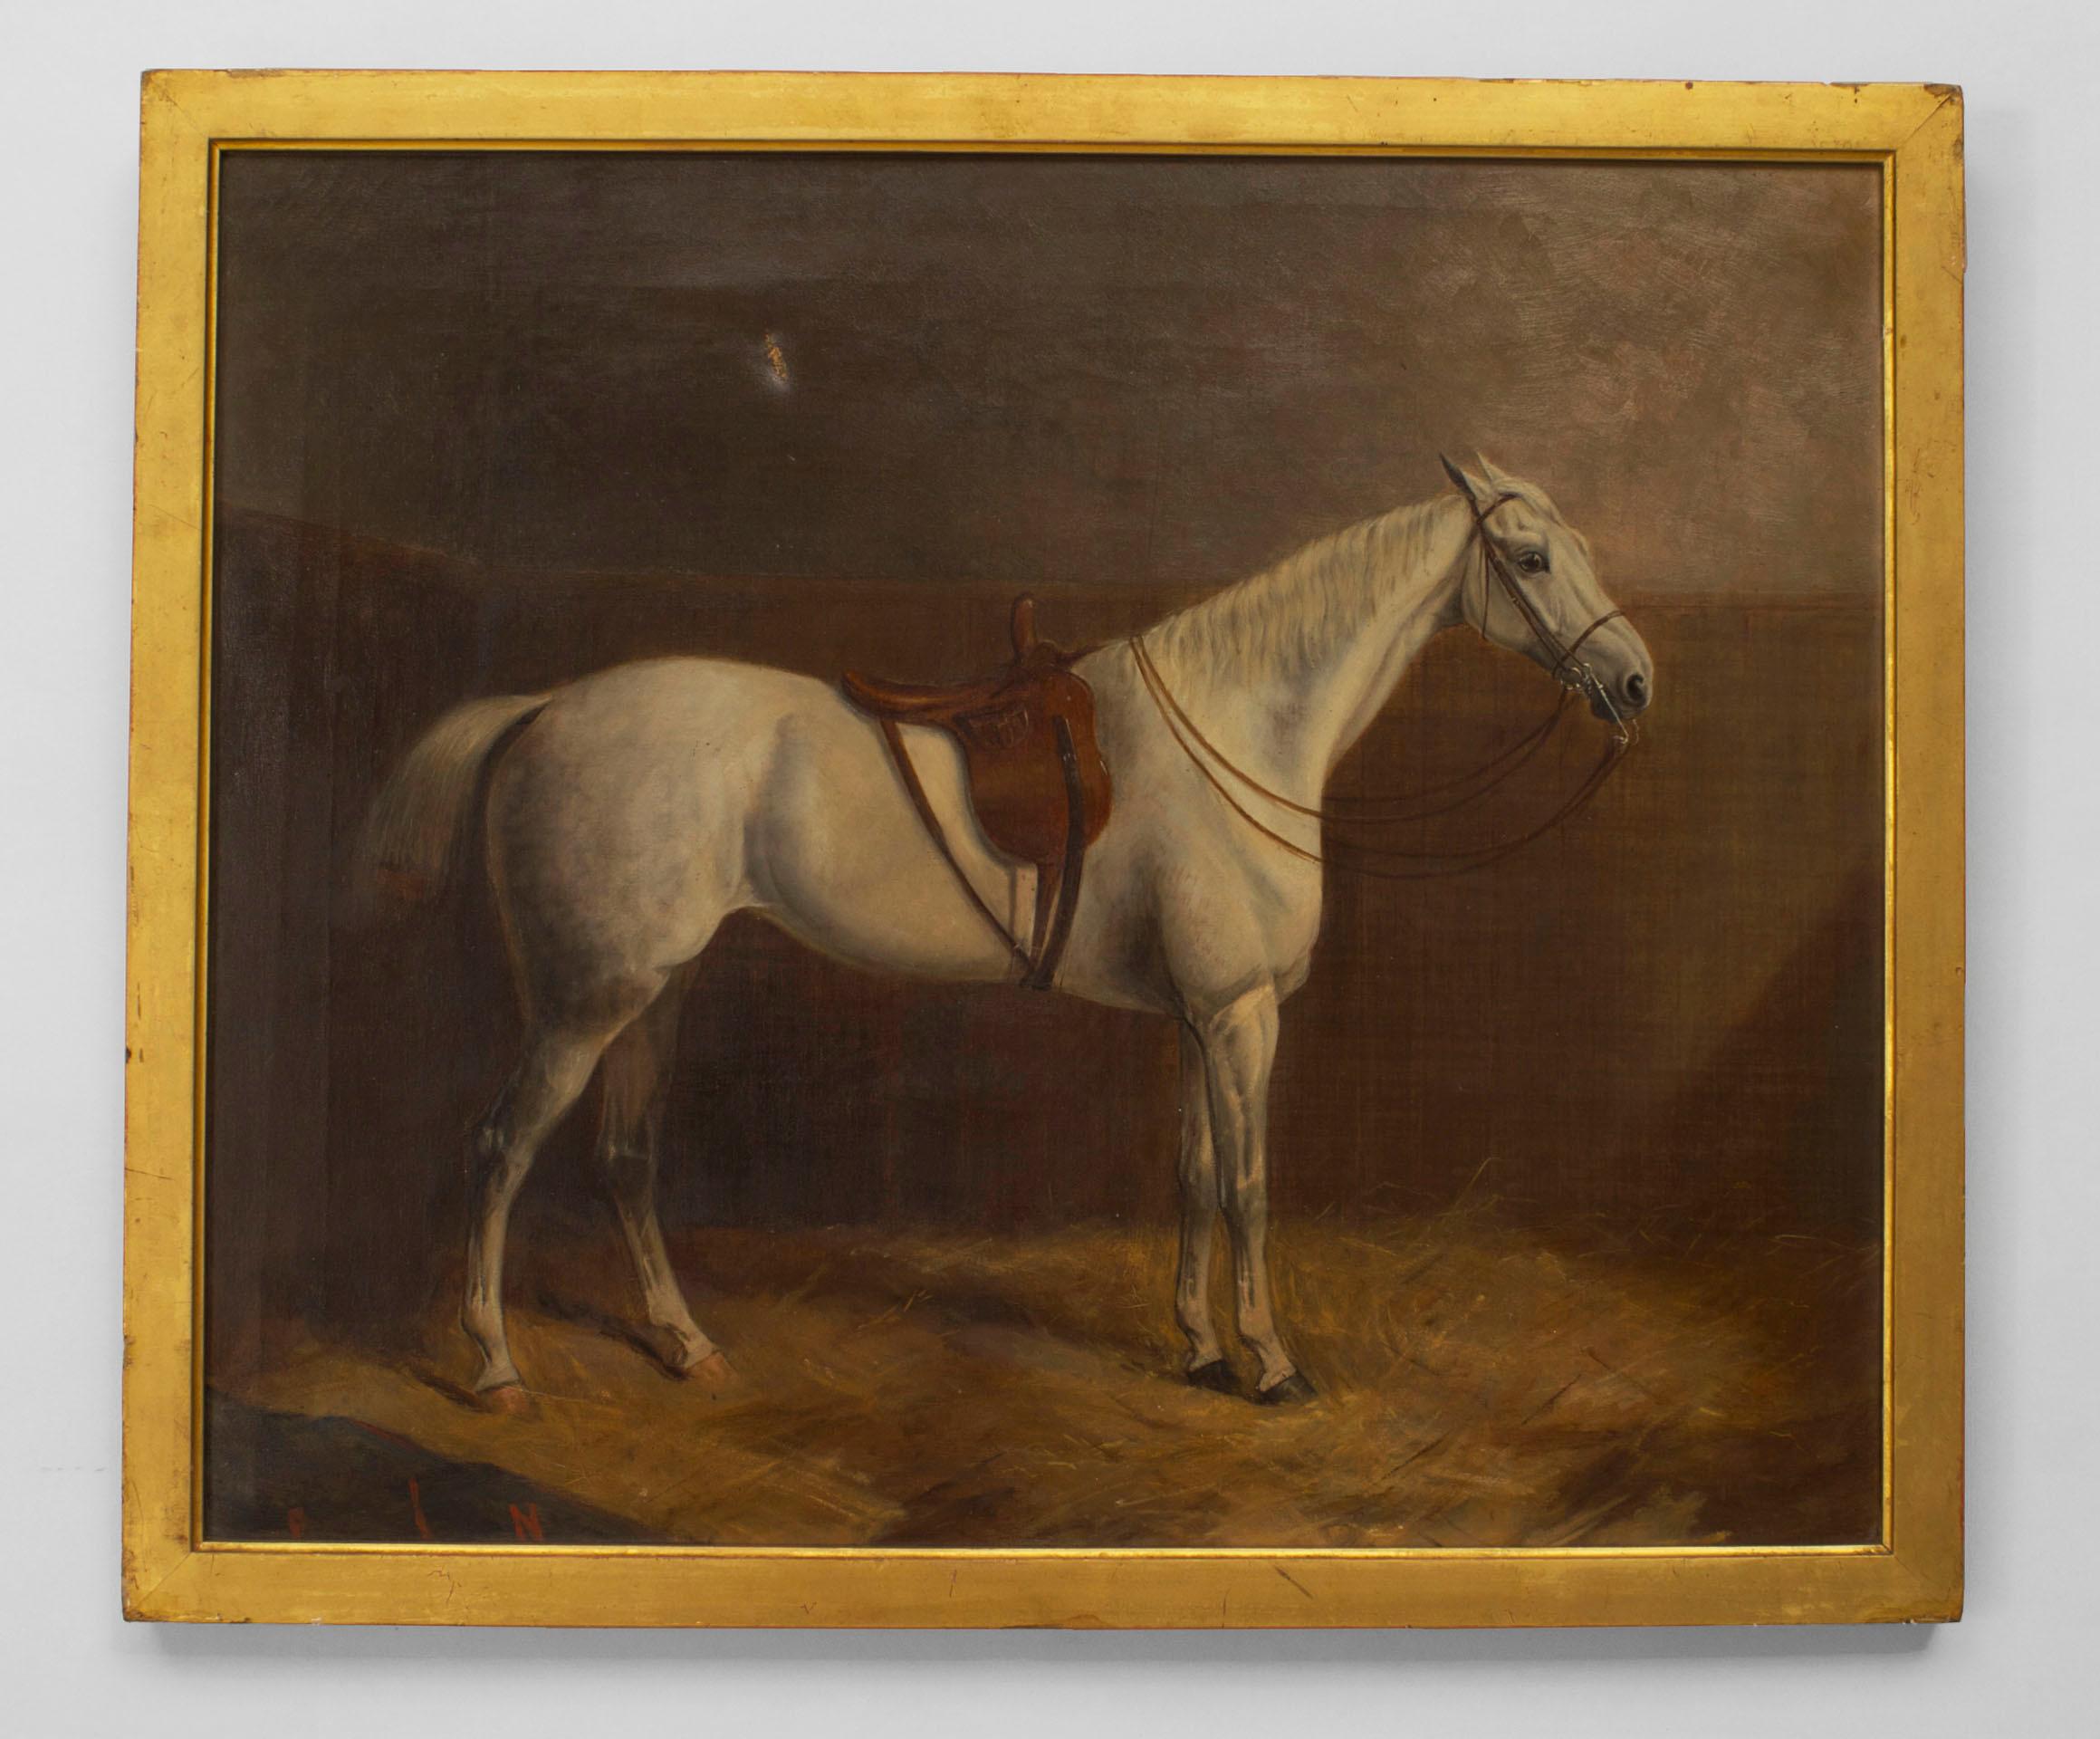 Paire de peintures à l'huile anglaises victoriennes encadrées et dorées représentant un cheval blanc avec selle près du mur (signées J. PAUL 1873).
 